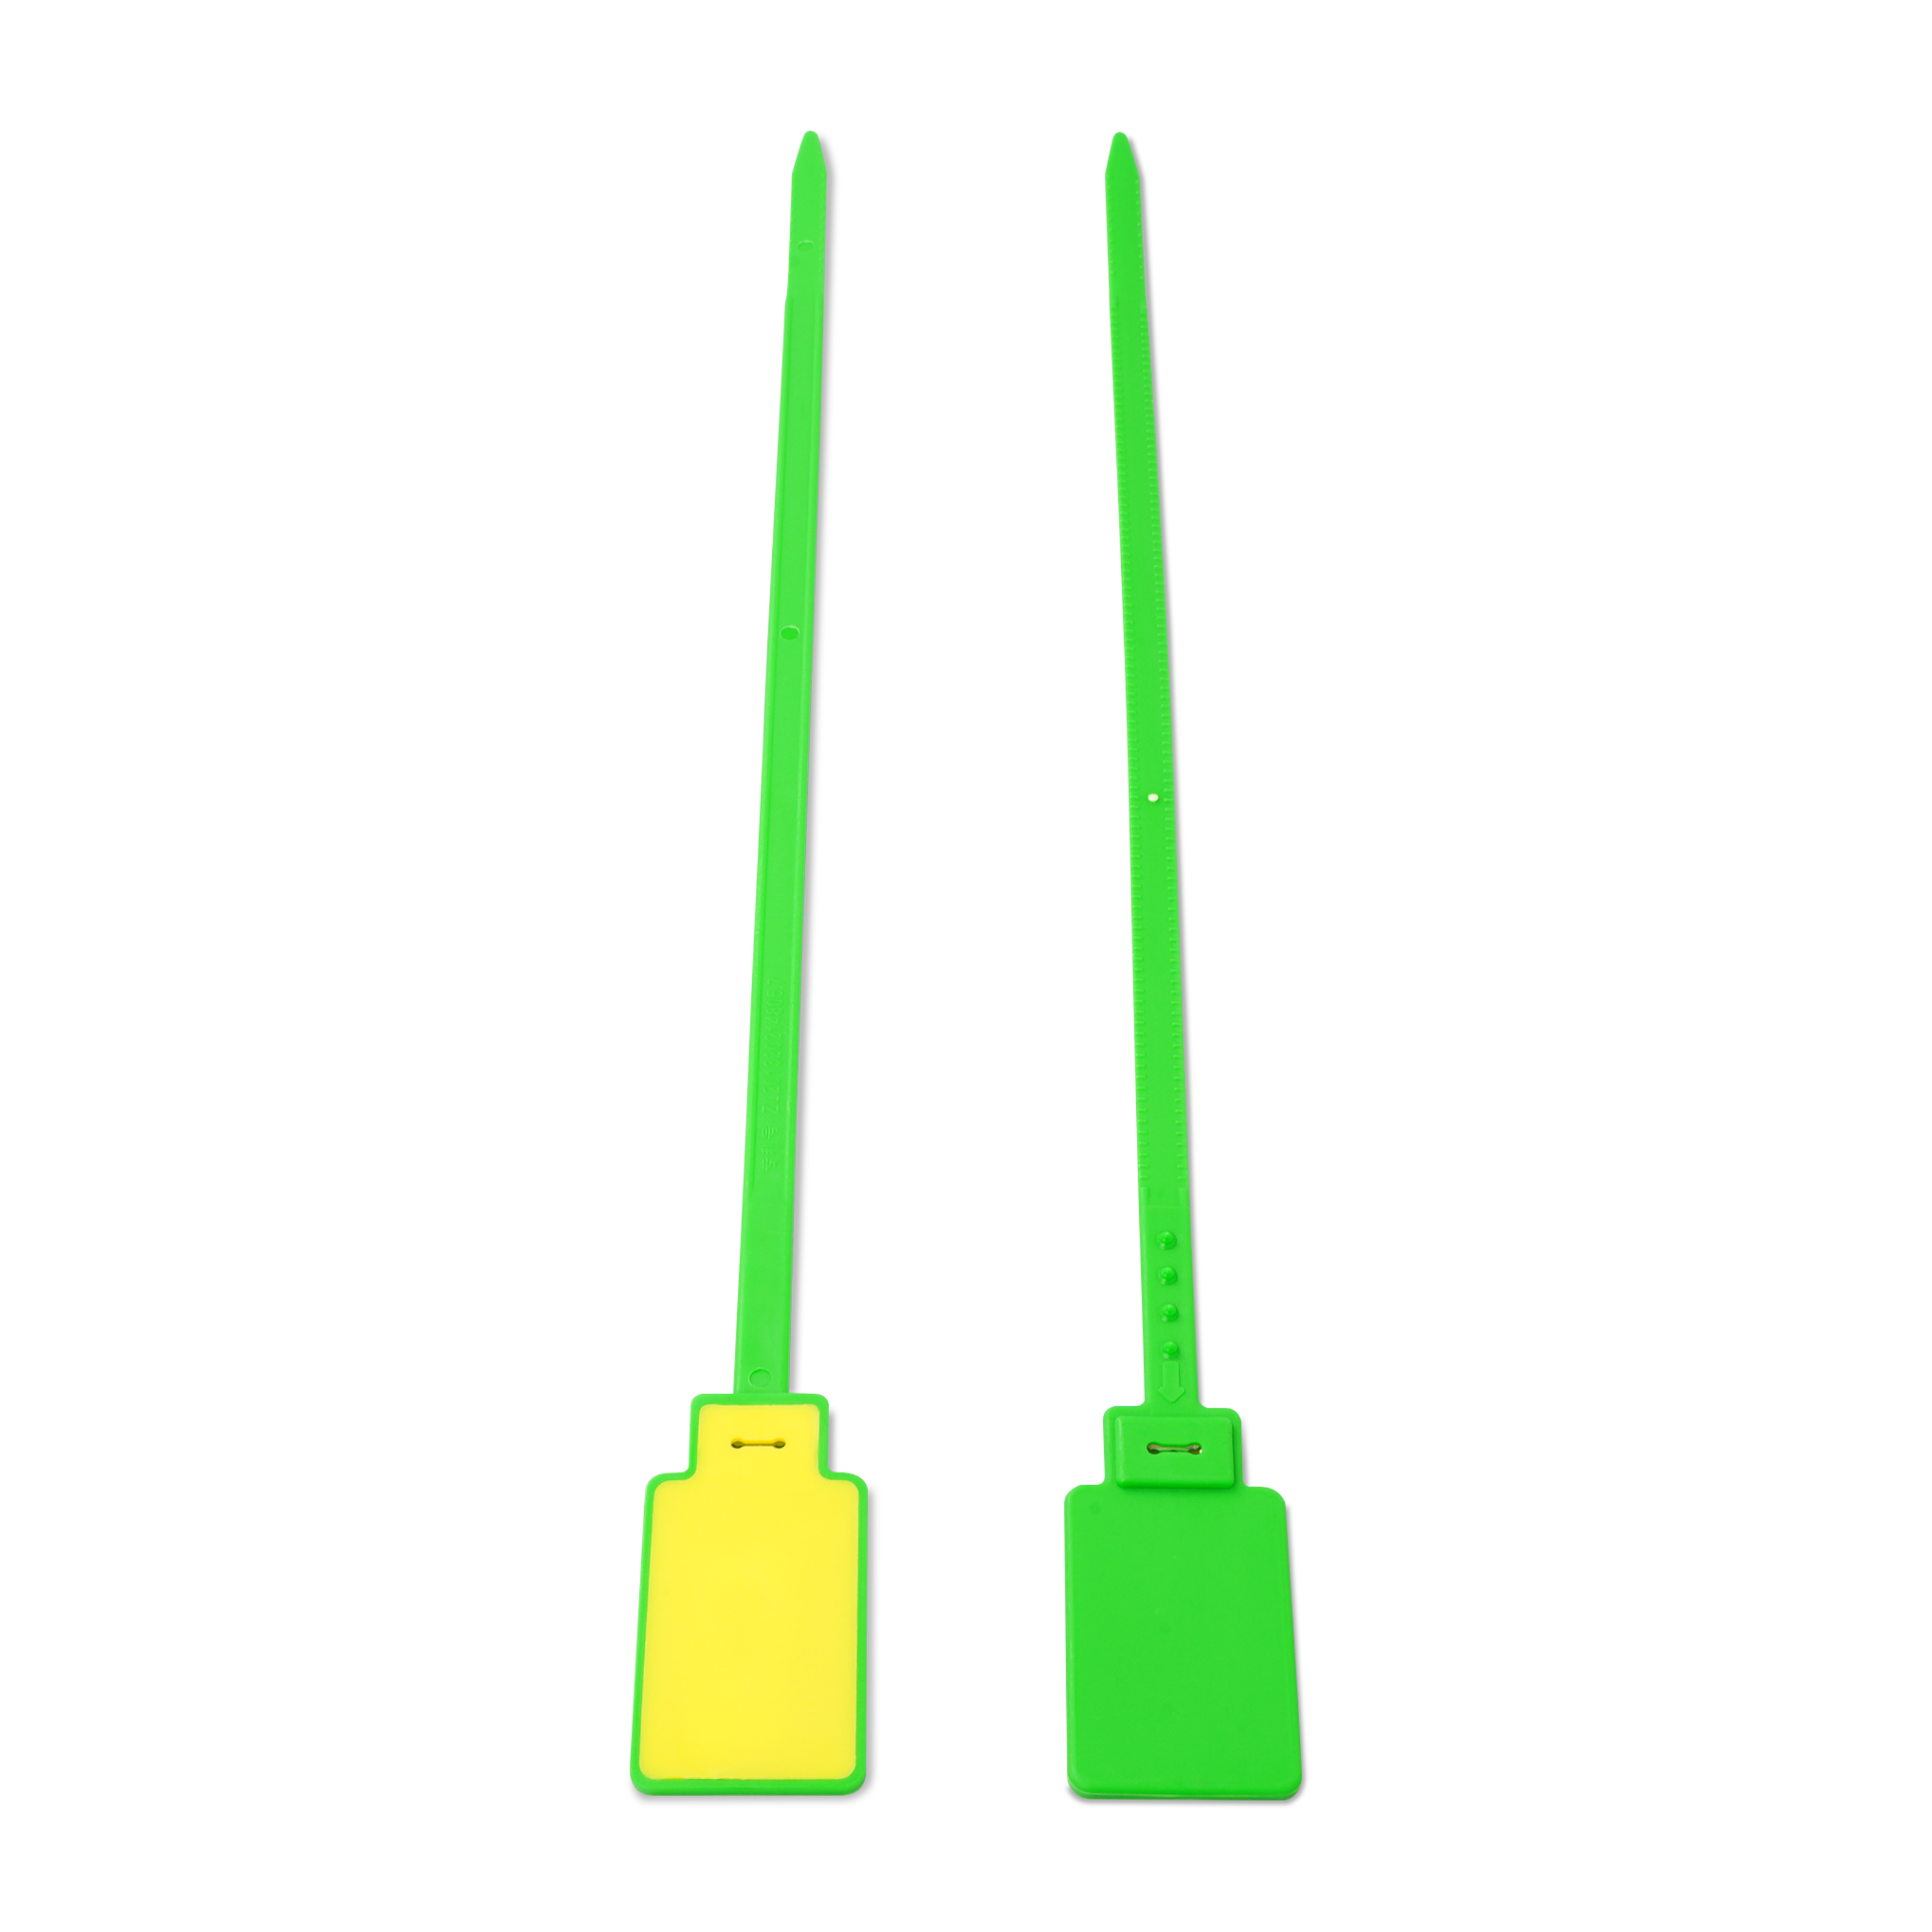 Vorder- und Rückseite NFC Kabelbinder aus PVC in grün und gelb